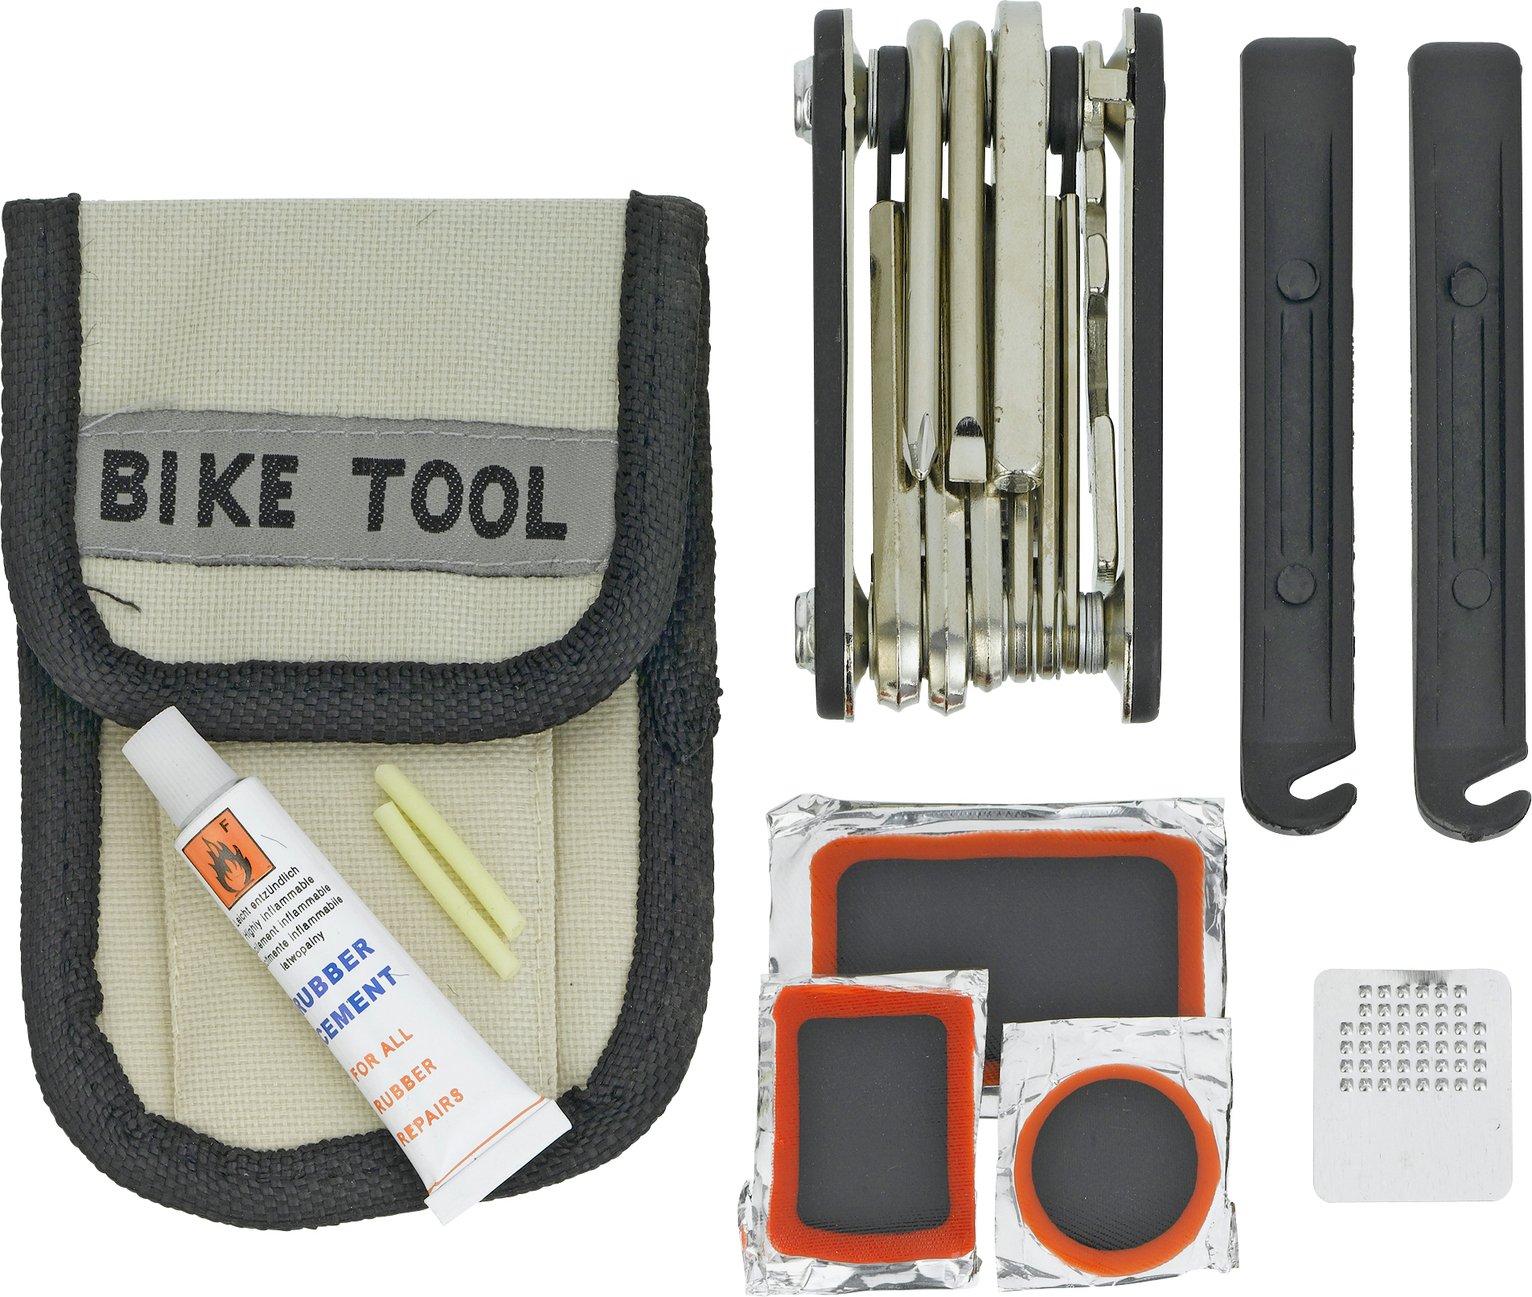 bike puncture repair kit with pump